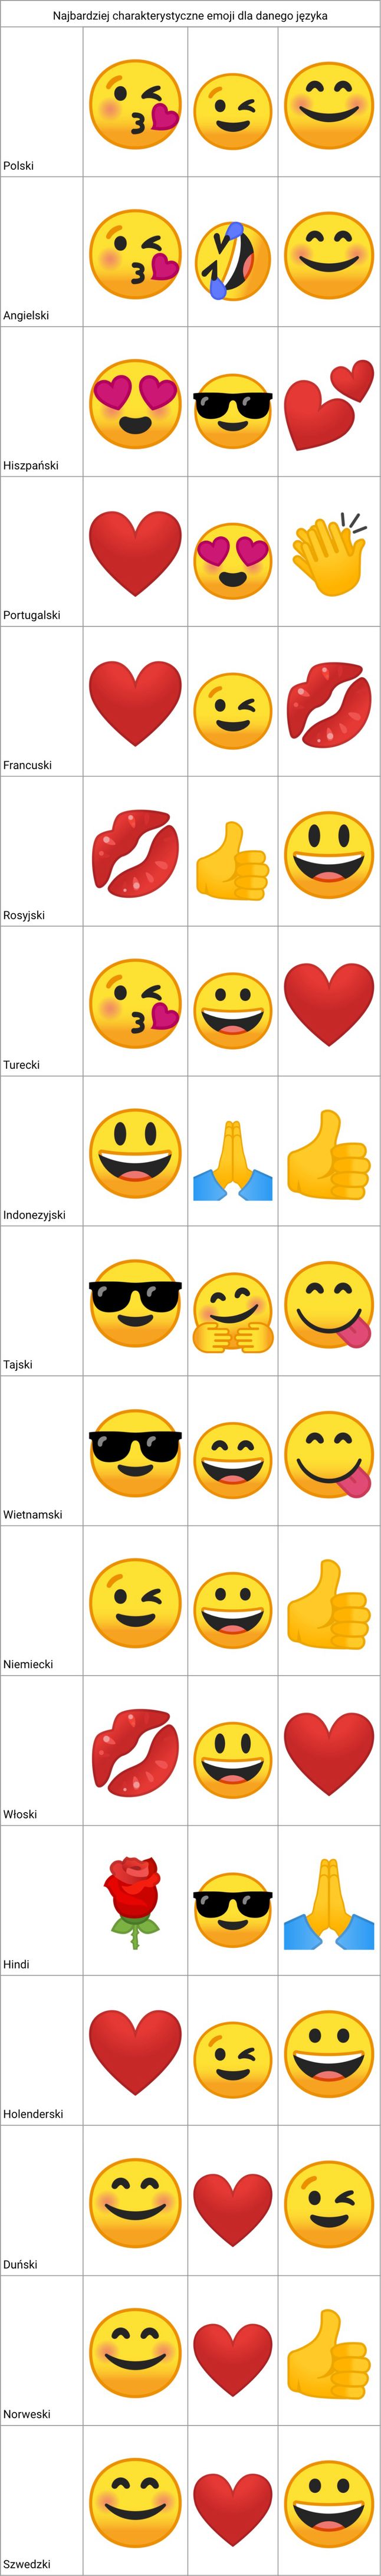 Emoji najbardziej charakterystyczne dla poszczególnych języków